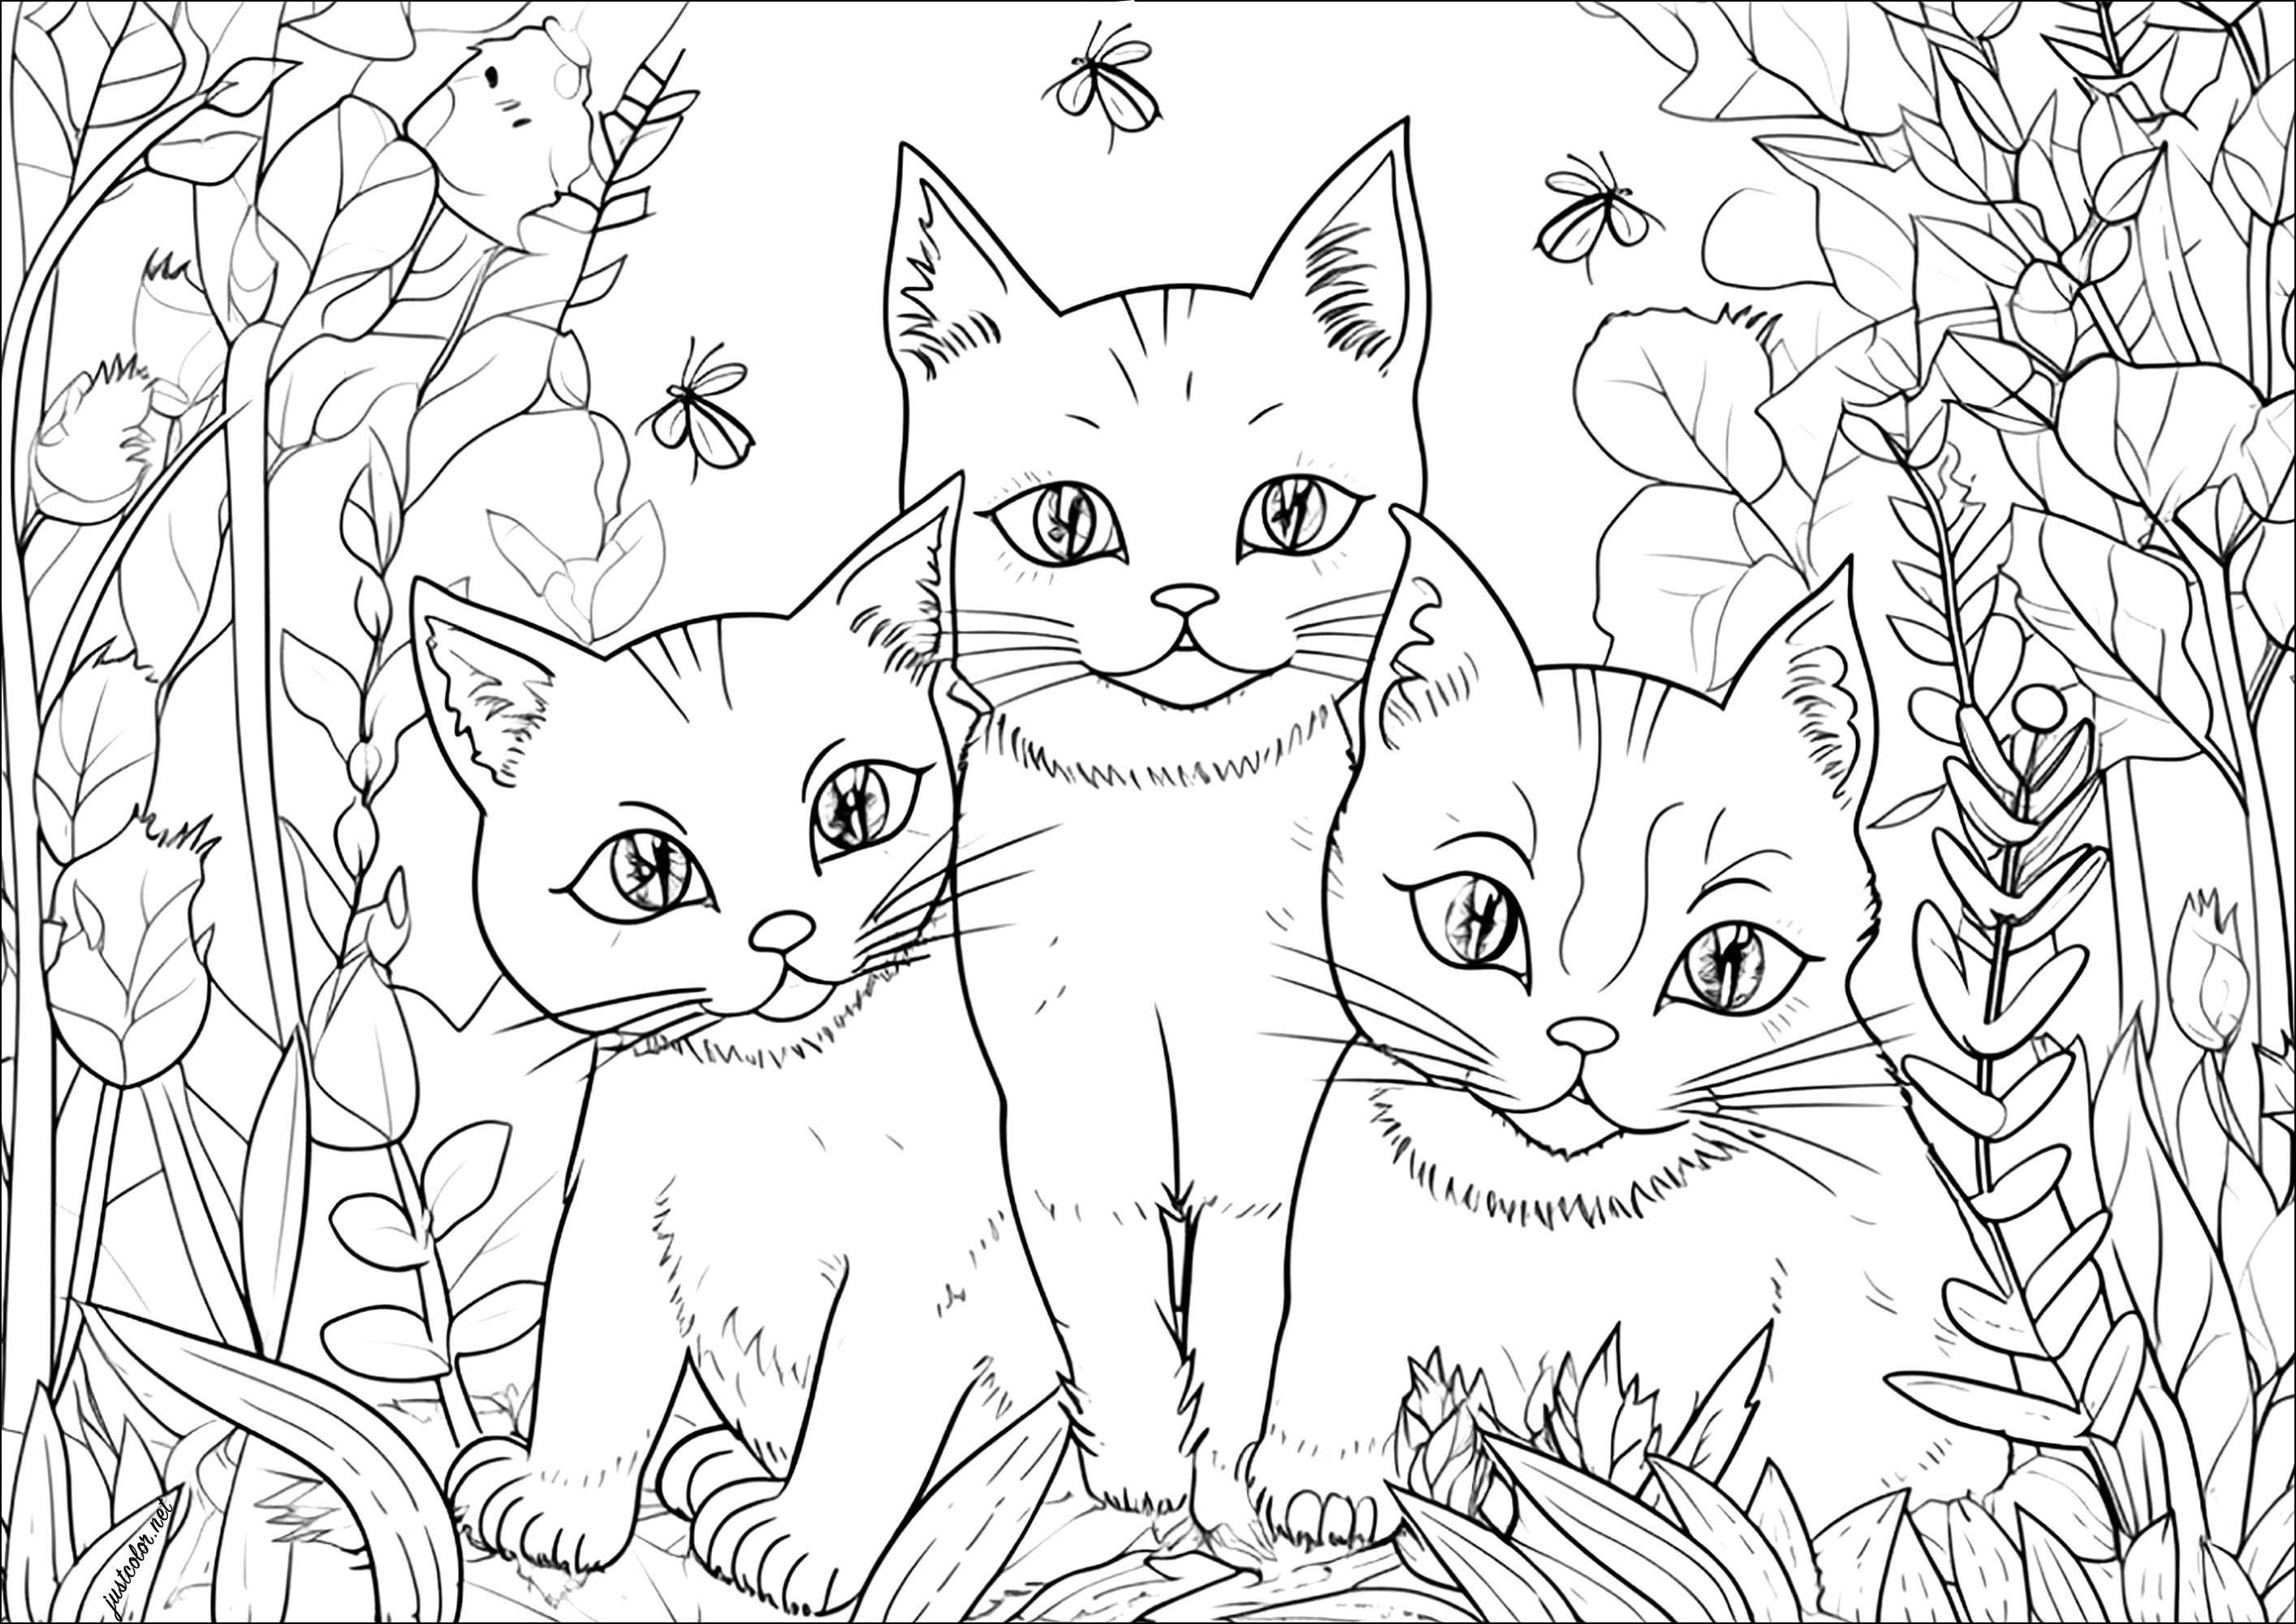 Trois jolis chats dans un jardin. Dans un joli décor de jardin, quelques insectes entourent ces trois beaux chats, dessinés avec un style très réaliste